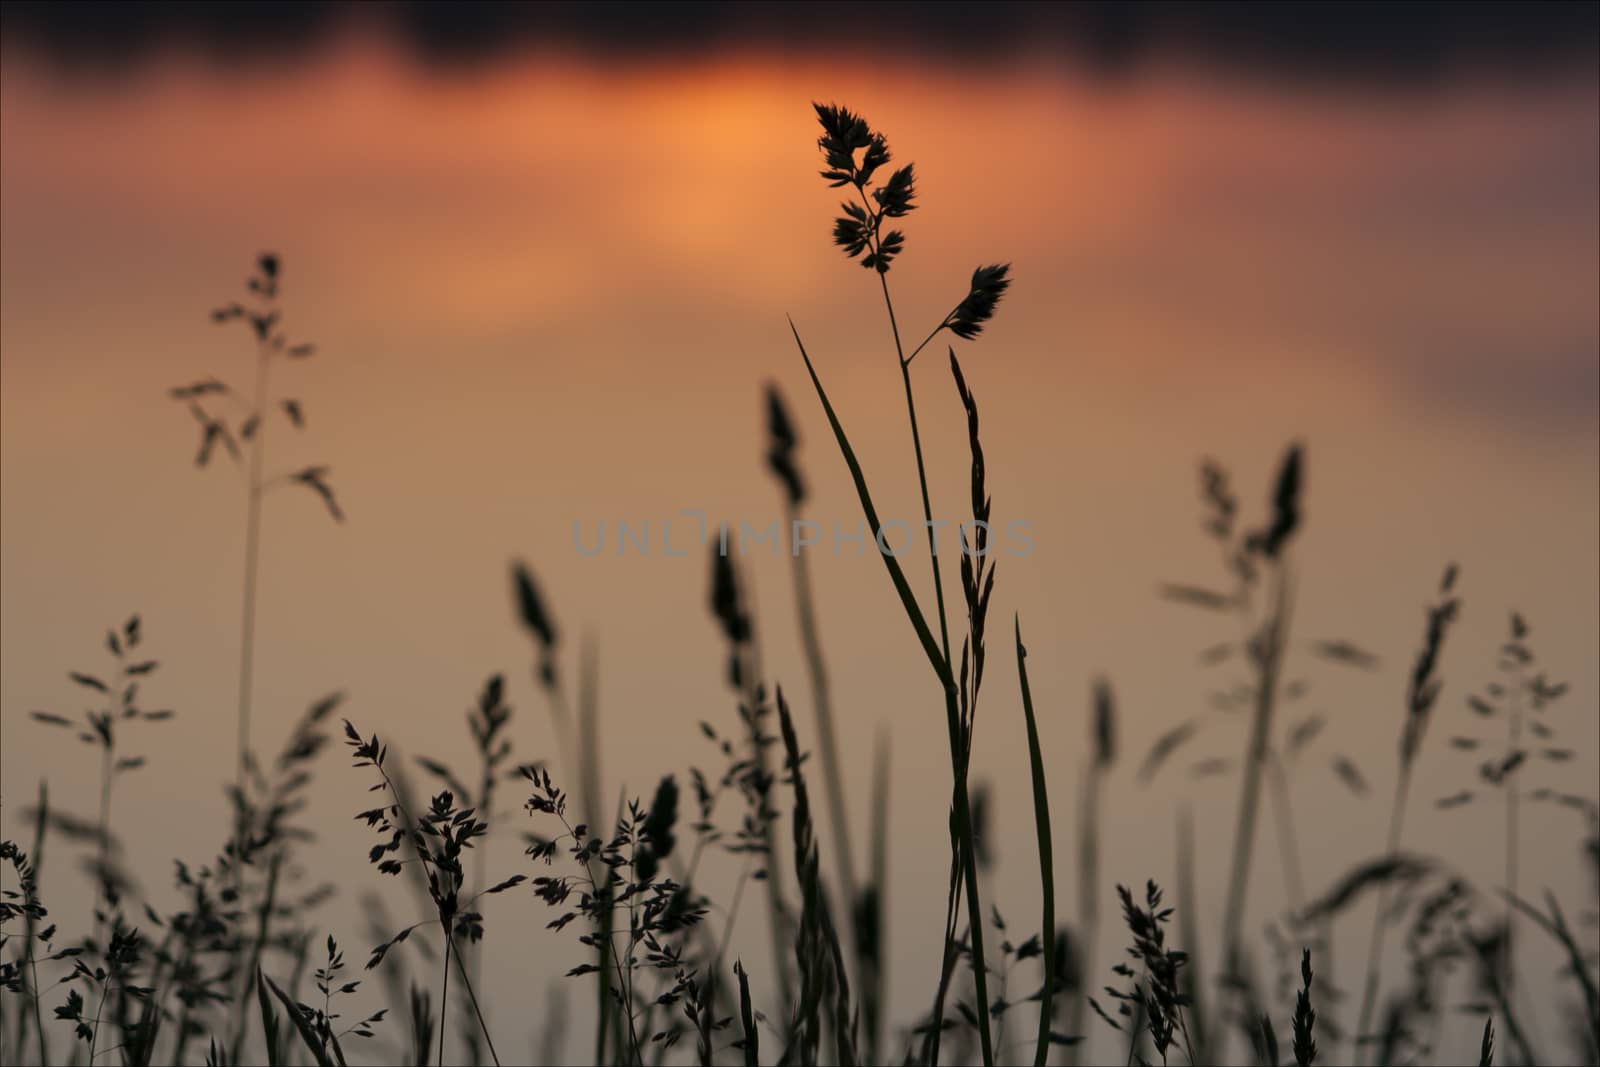 Sunrise landscape by dazhetak